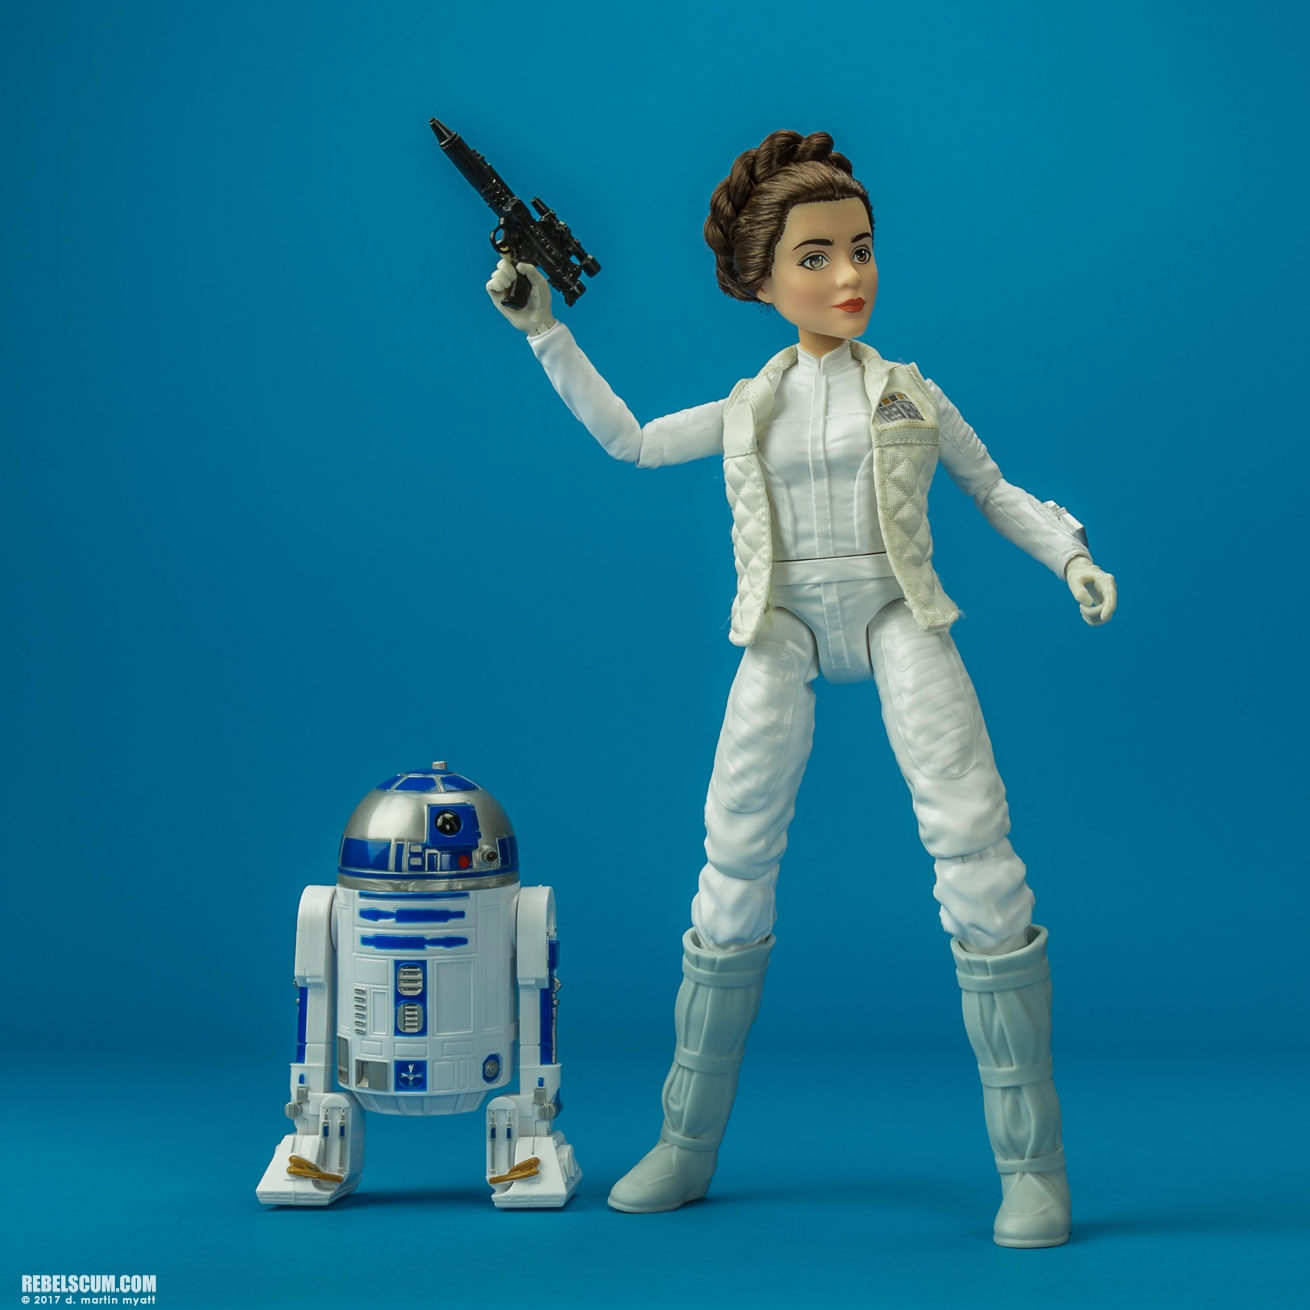 Forces-Of-Destiny-Princess-Leia-Organa-R2-D2-011.jpg